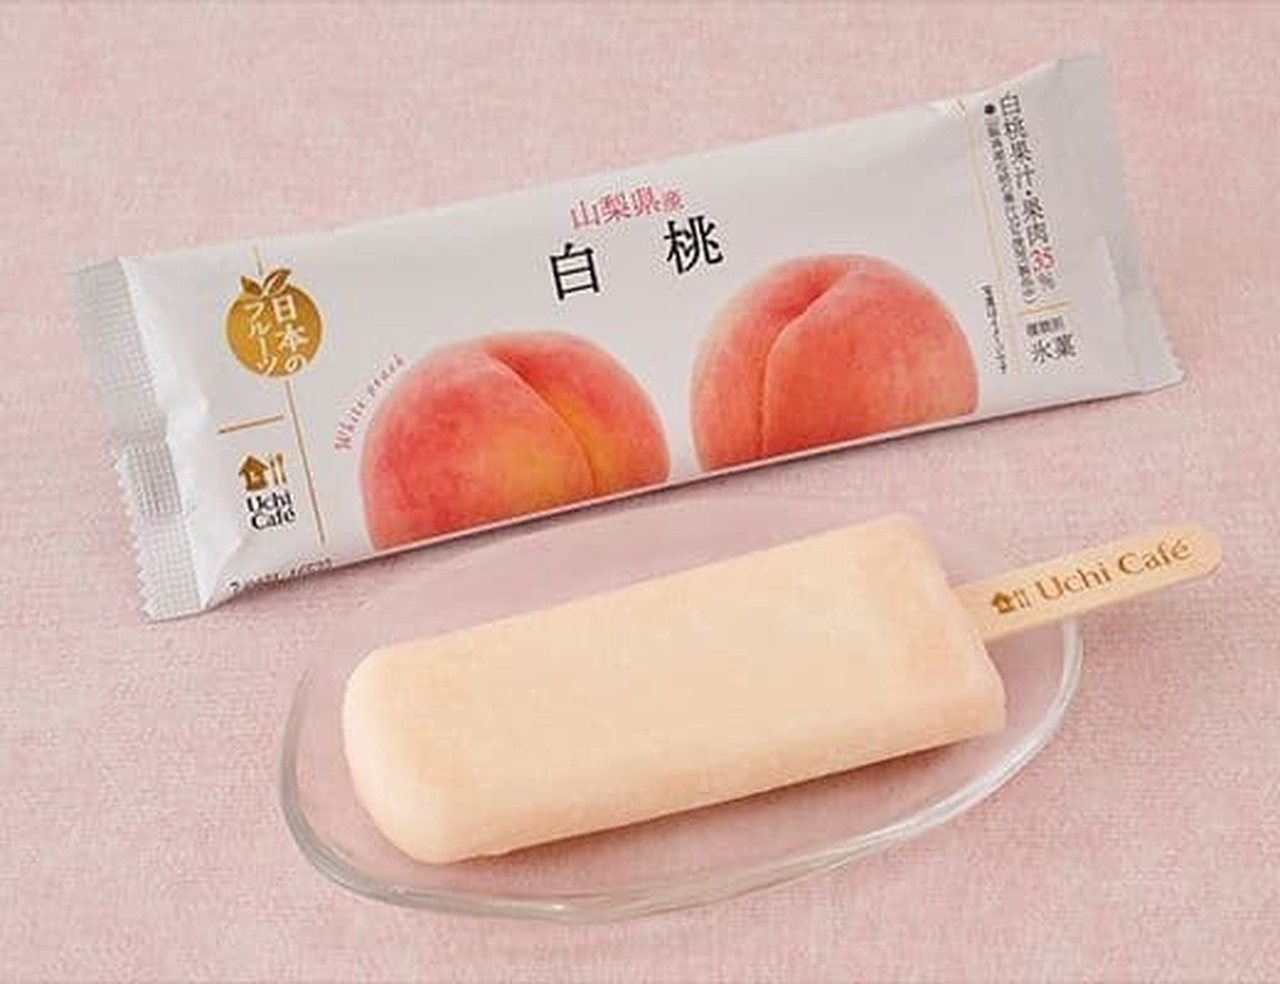 Lawson "Uchi Cafe Japanese Fruit Yamanashi Prefecture White Peach 80ml"